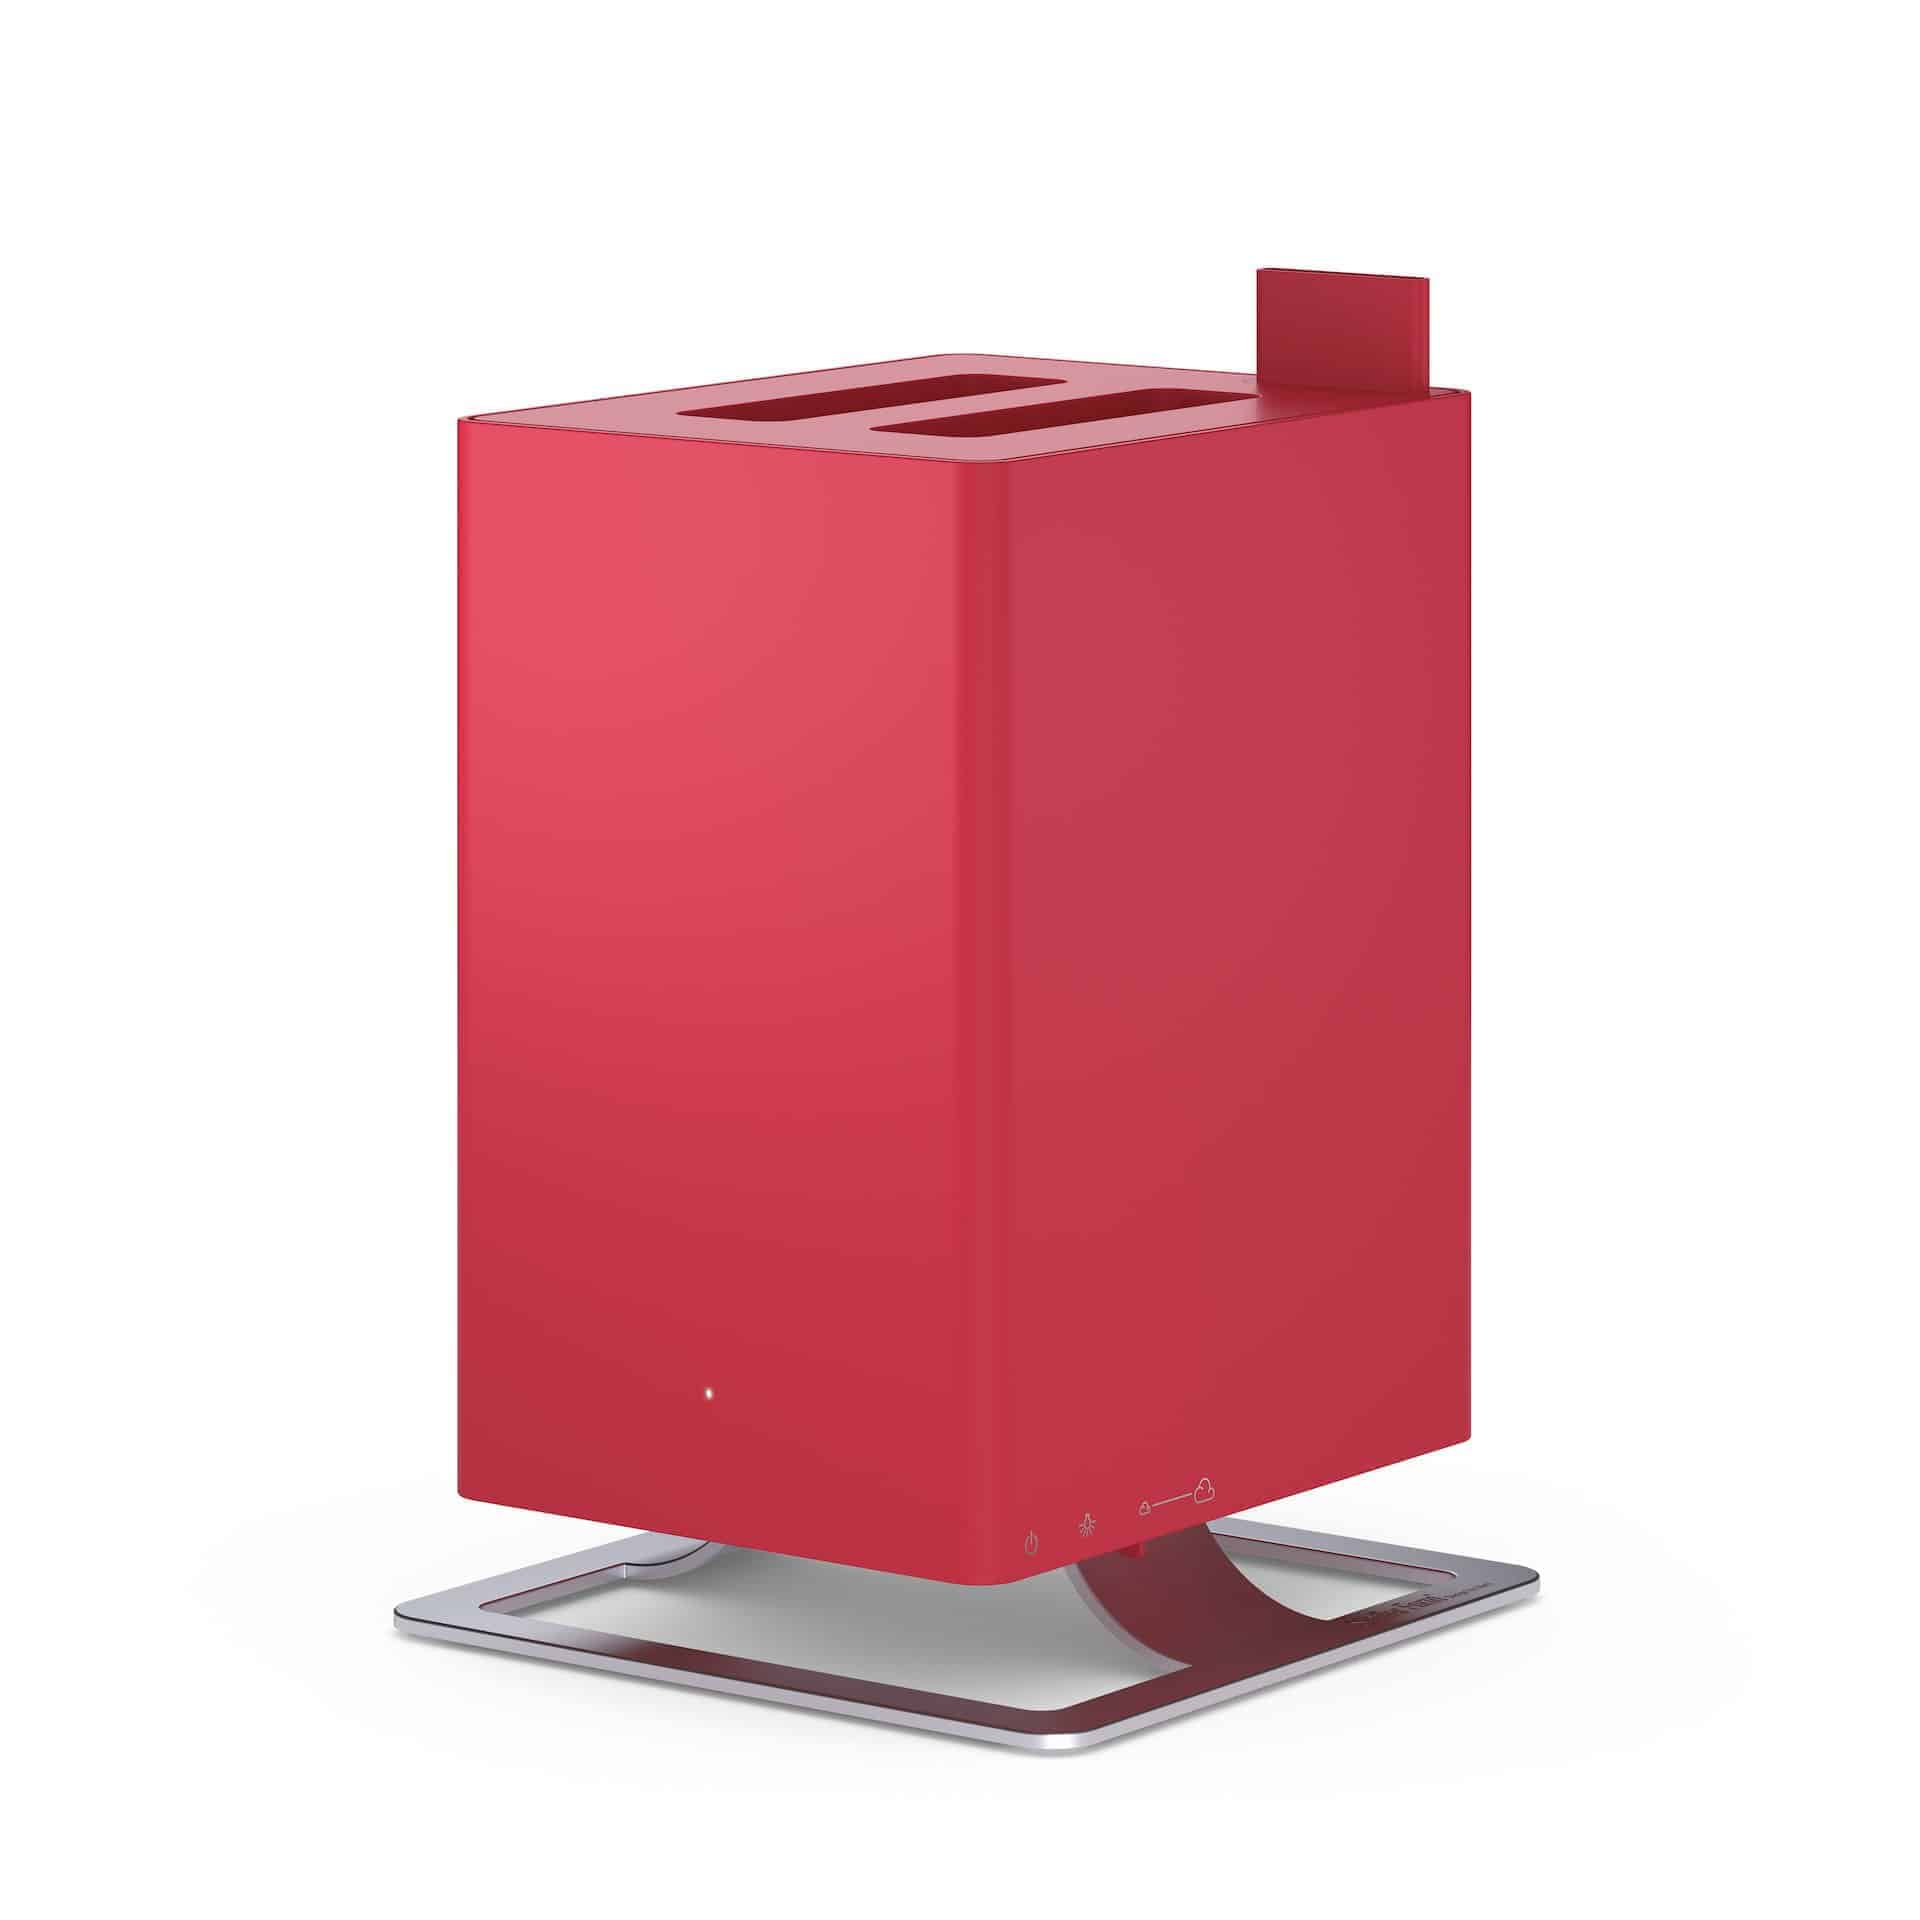 Luftreiniger / Luftfilter mit HEPA Stadler Form Anton Chili RED